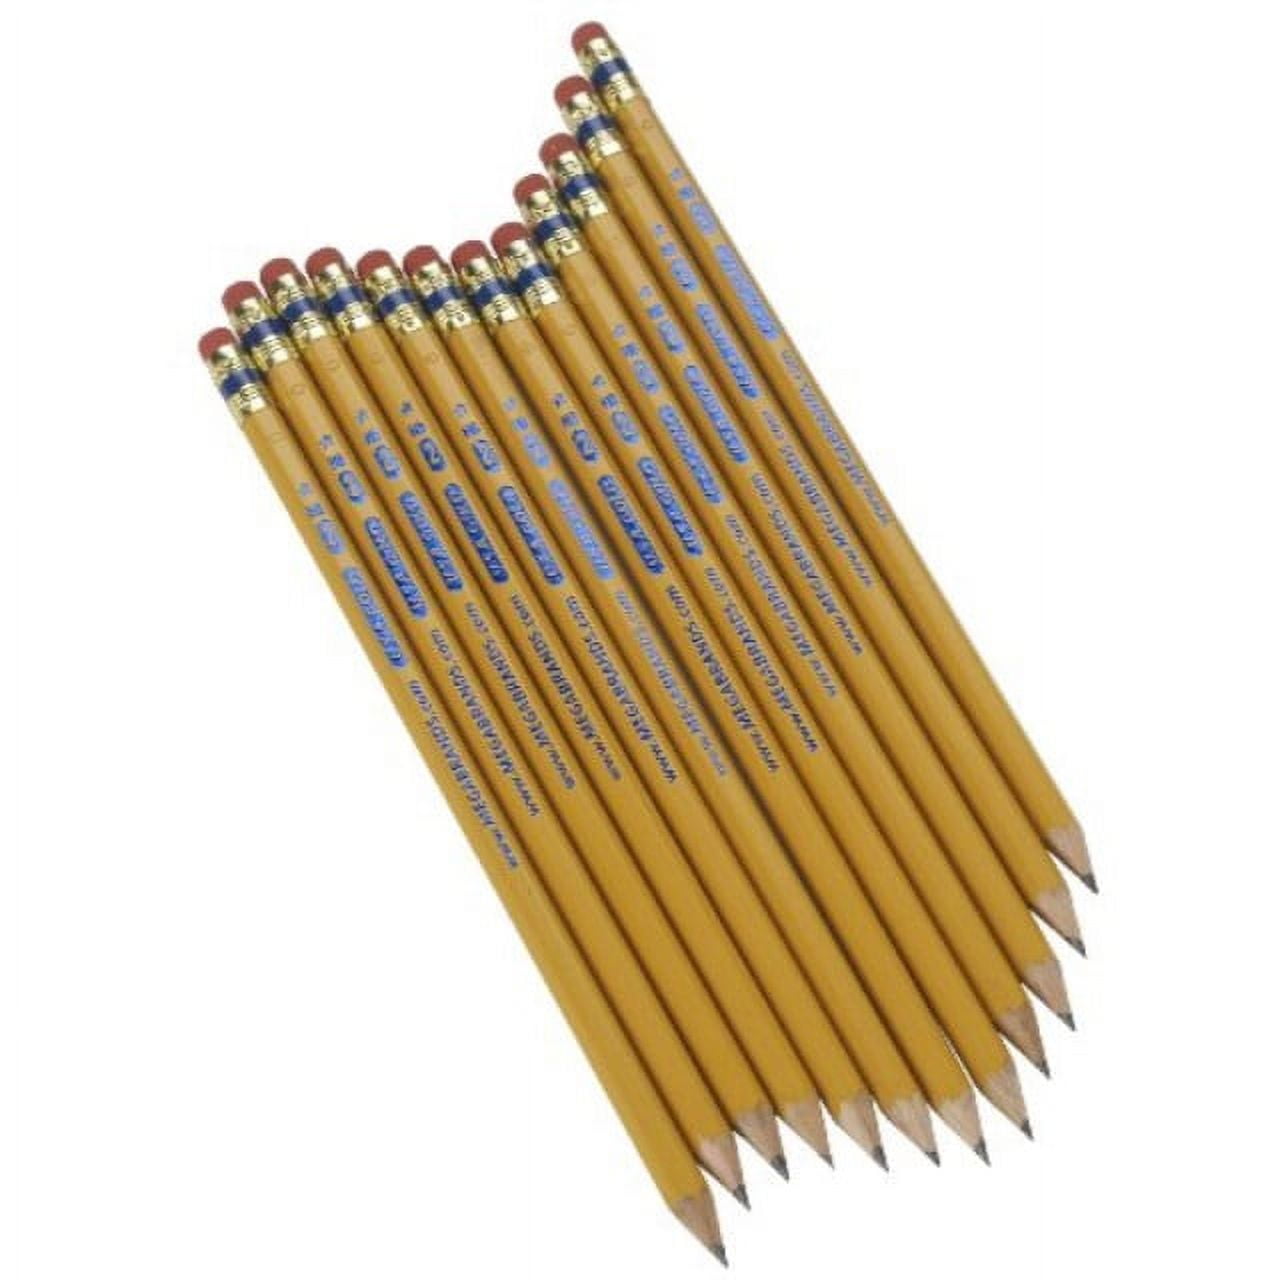 Bostitch Premium American Cedar Pencils, 2-Pack